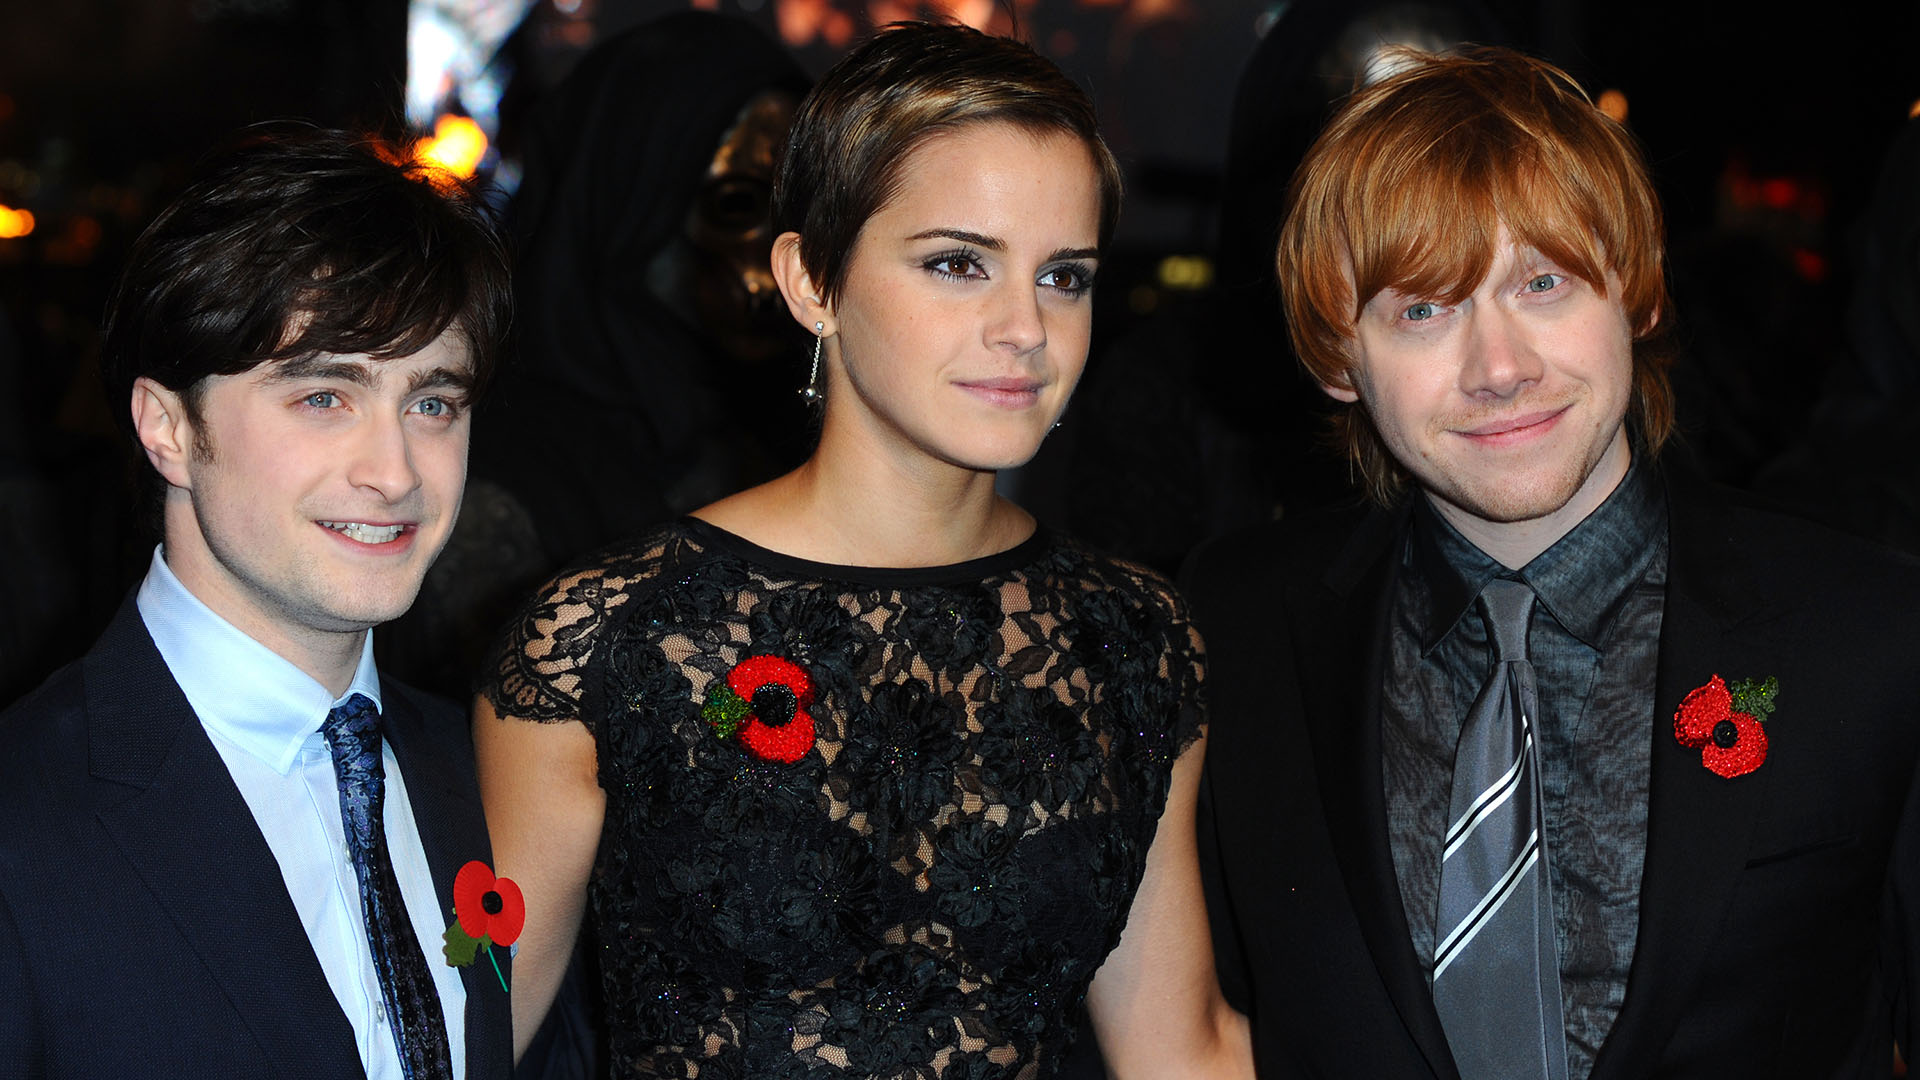 El elenco principal de la franquicia "Harry Potter" estuvo conformado por Daniel Radcliffe, Emma Watson y Rupert Grint. En el aniversario número 20 de su estreno, compartirán una reunión para todos los fans. (Créditos/Anthony Harvey/Getty Images)